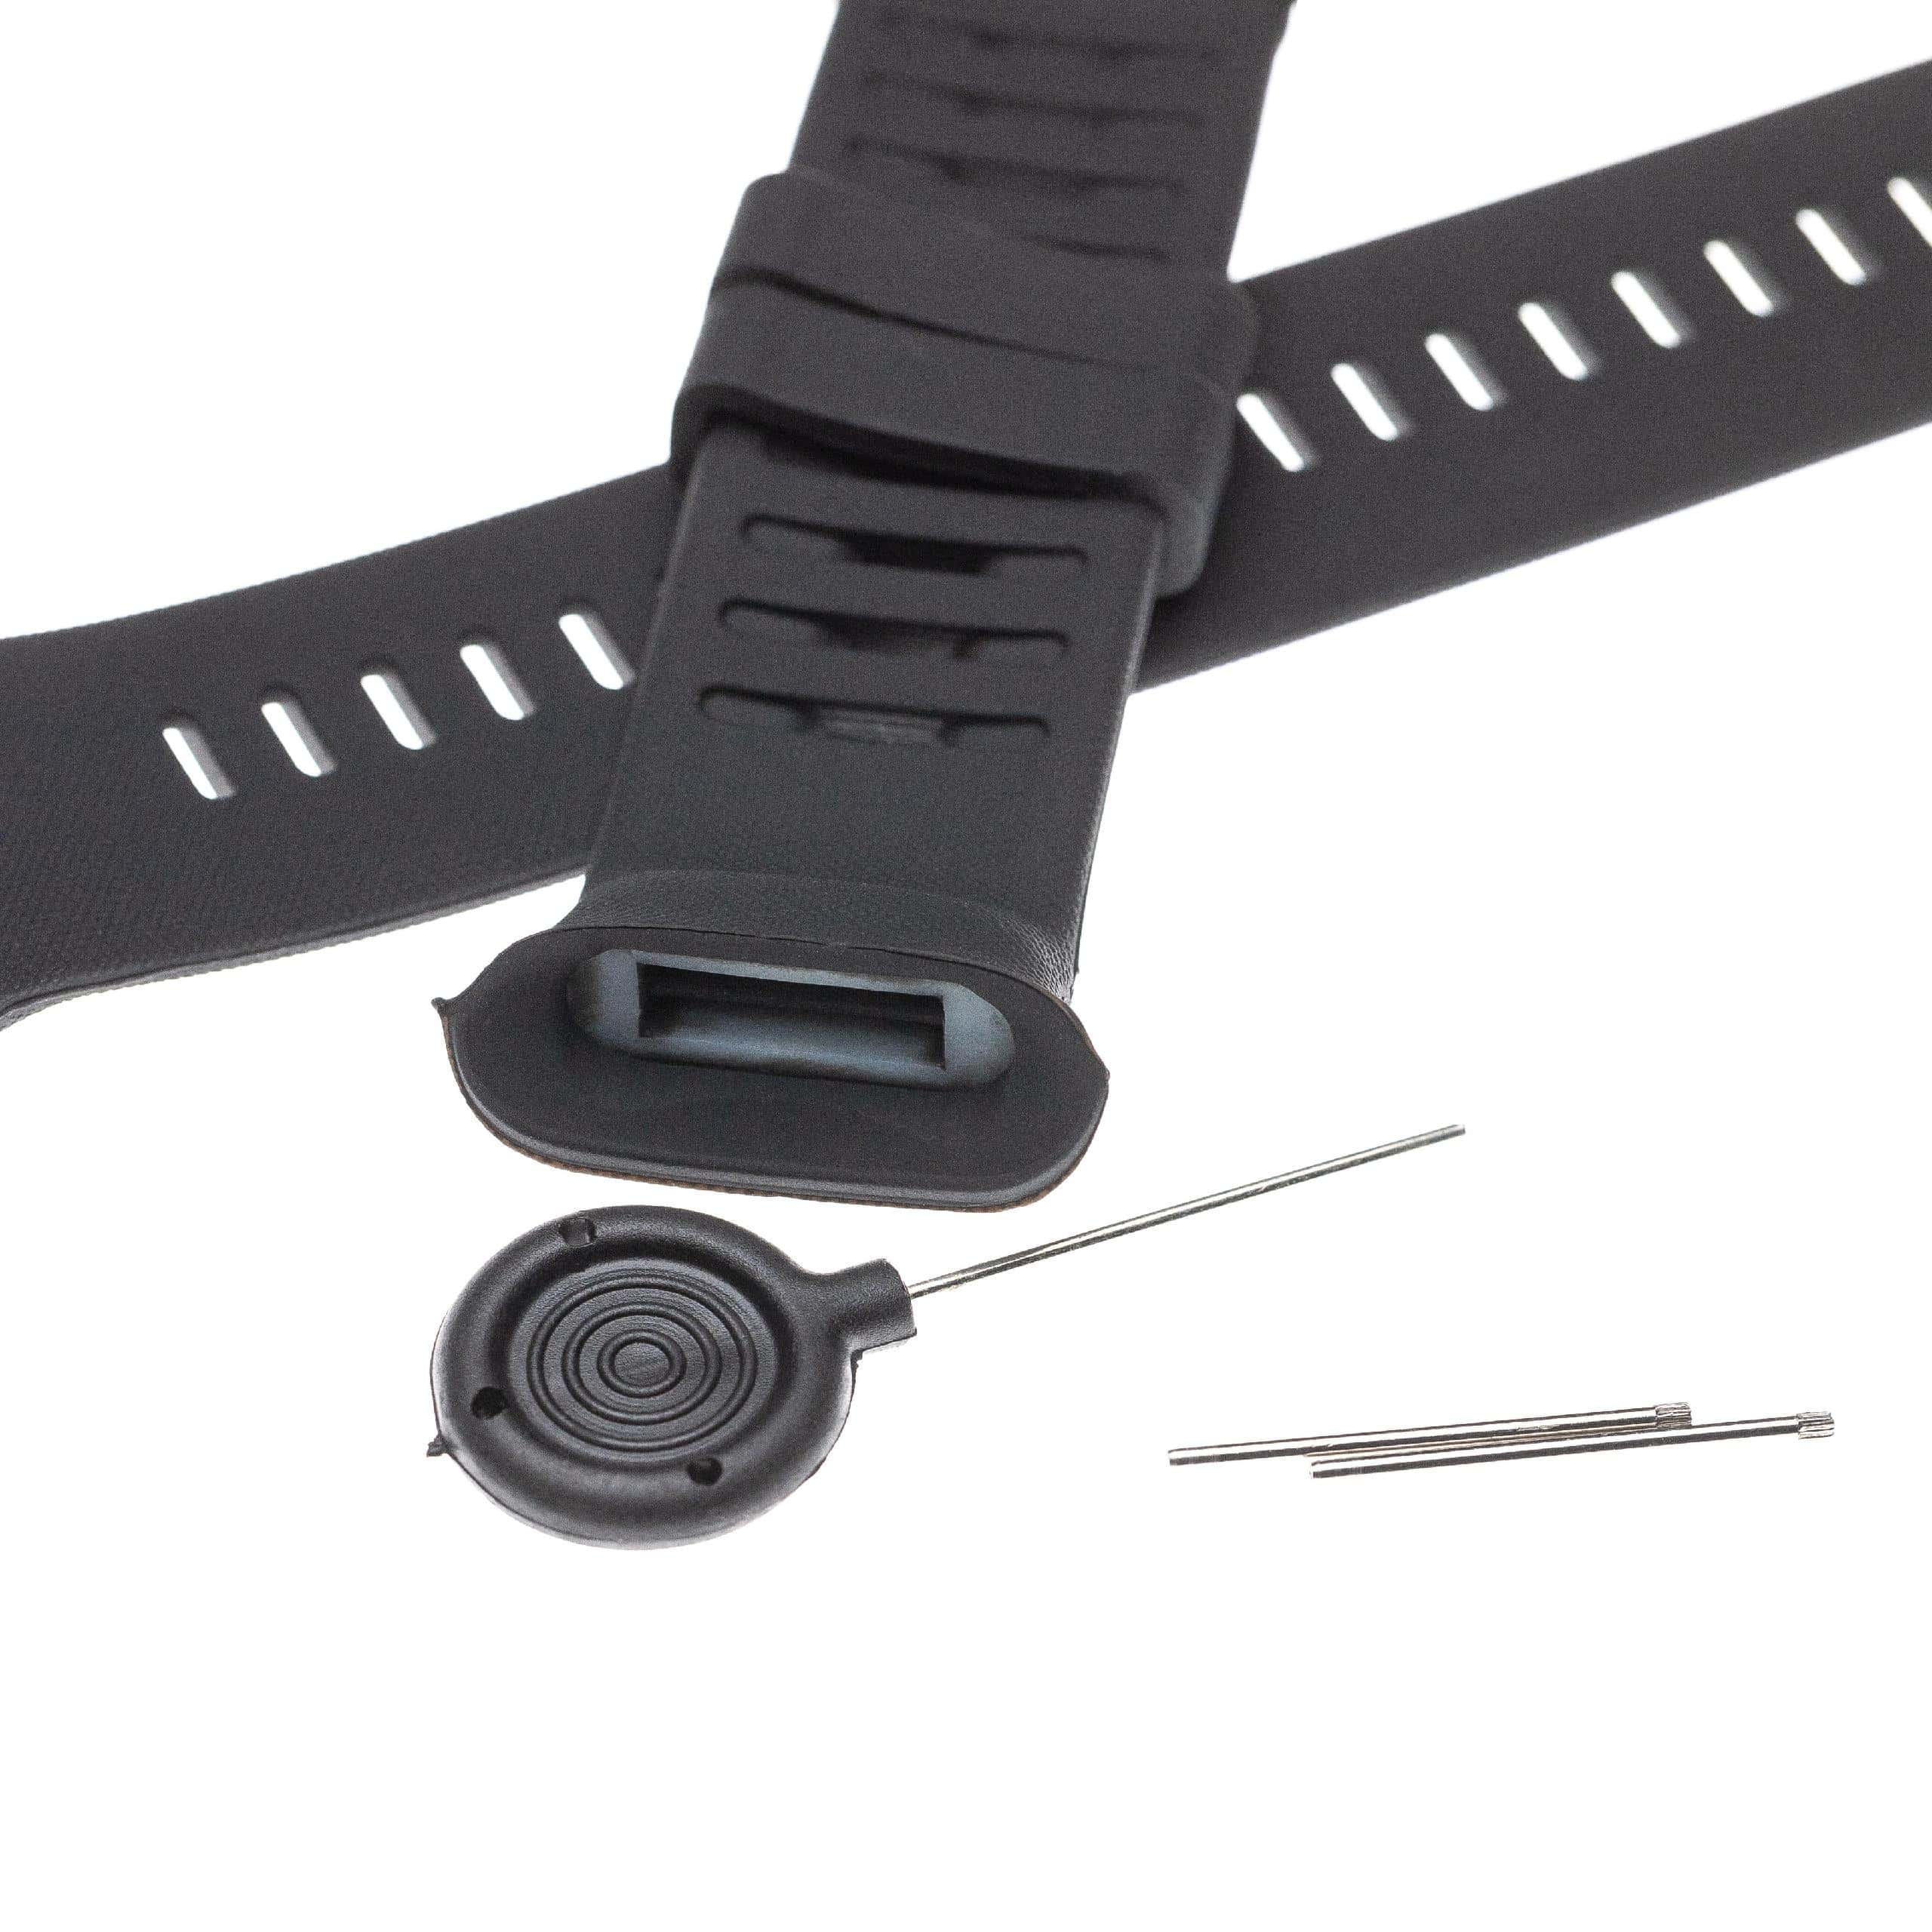 Armband für Polar Vantage Smartwatch - 12,6 + 8,7 cm lang, schwarz